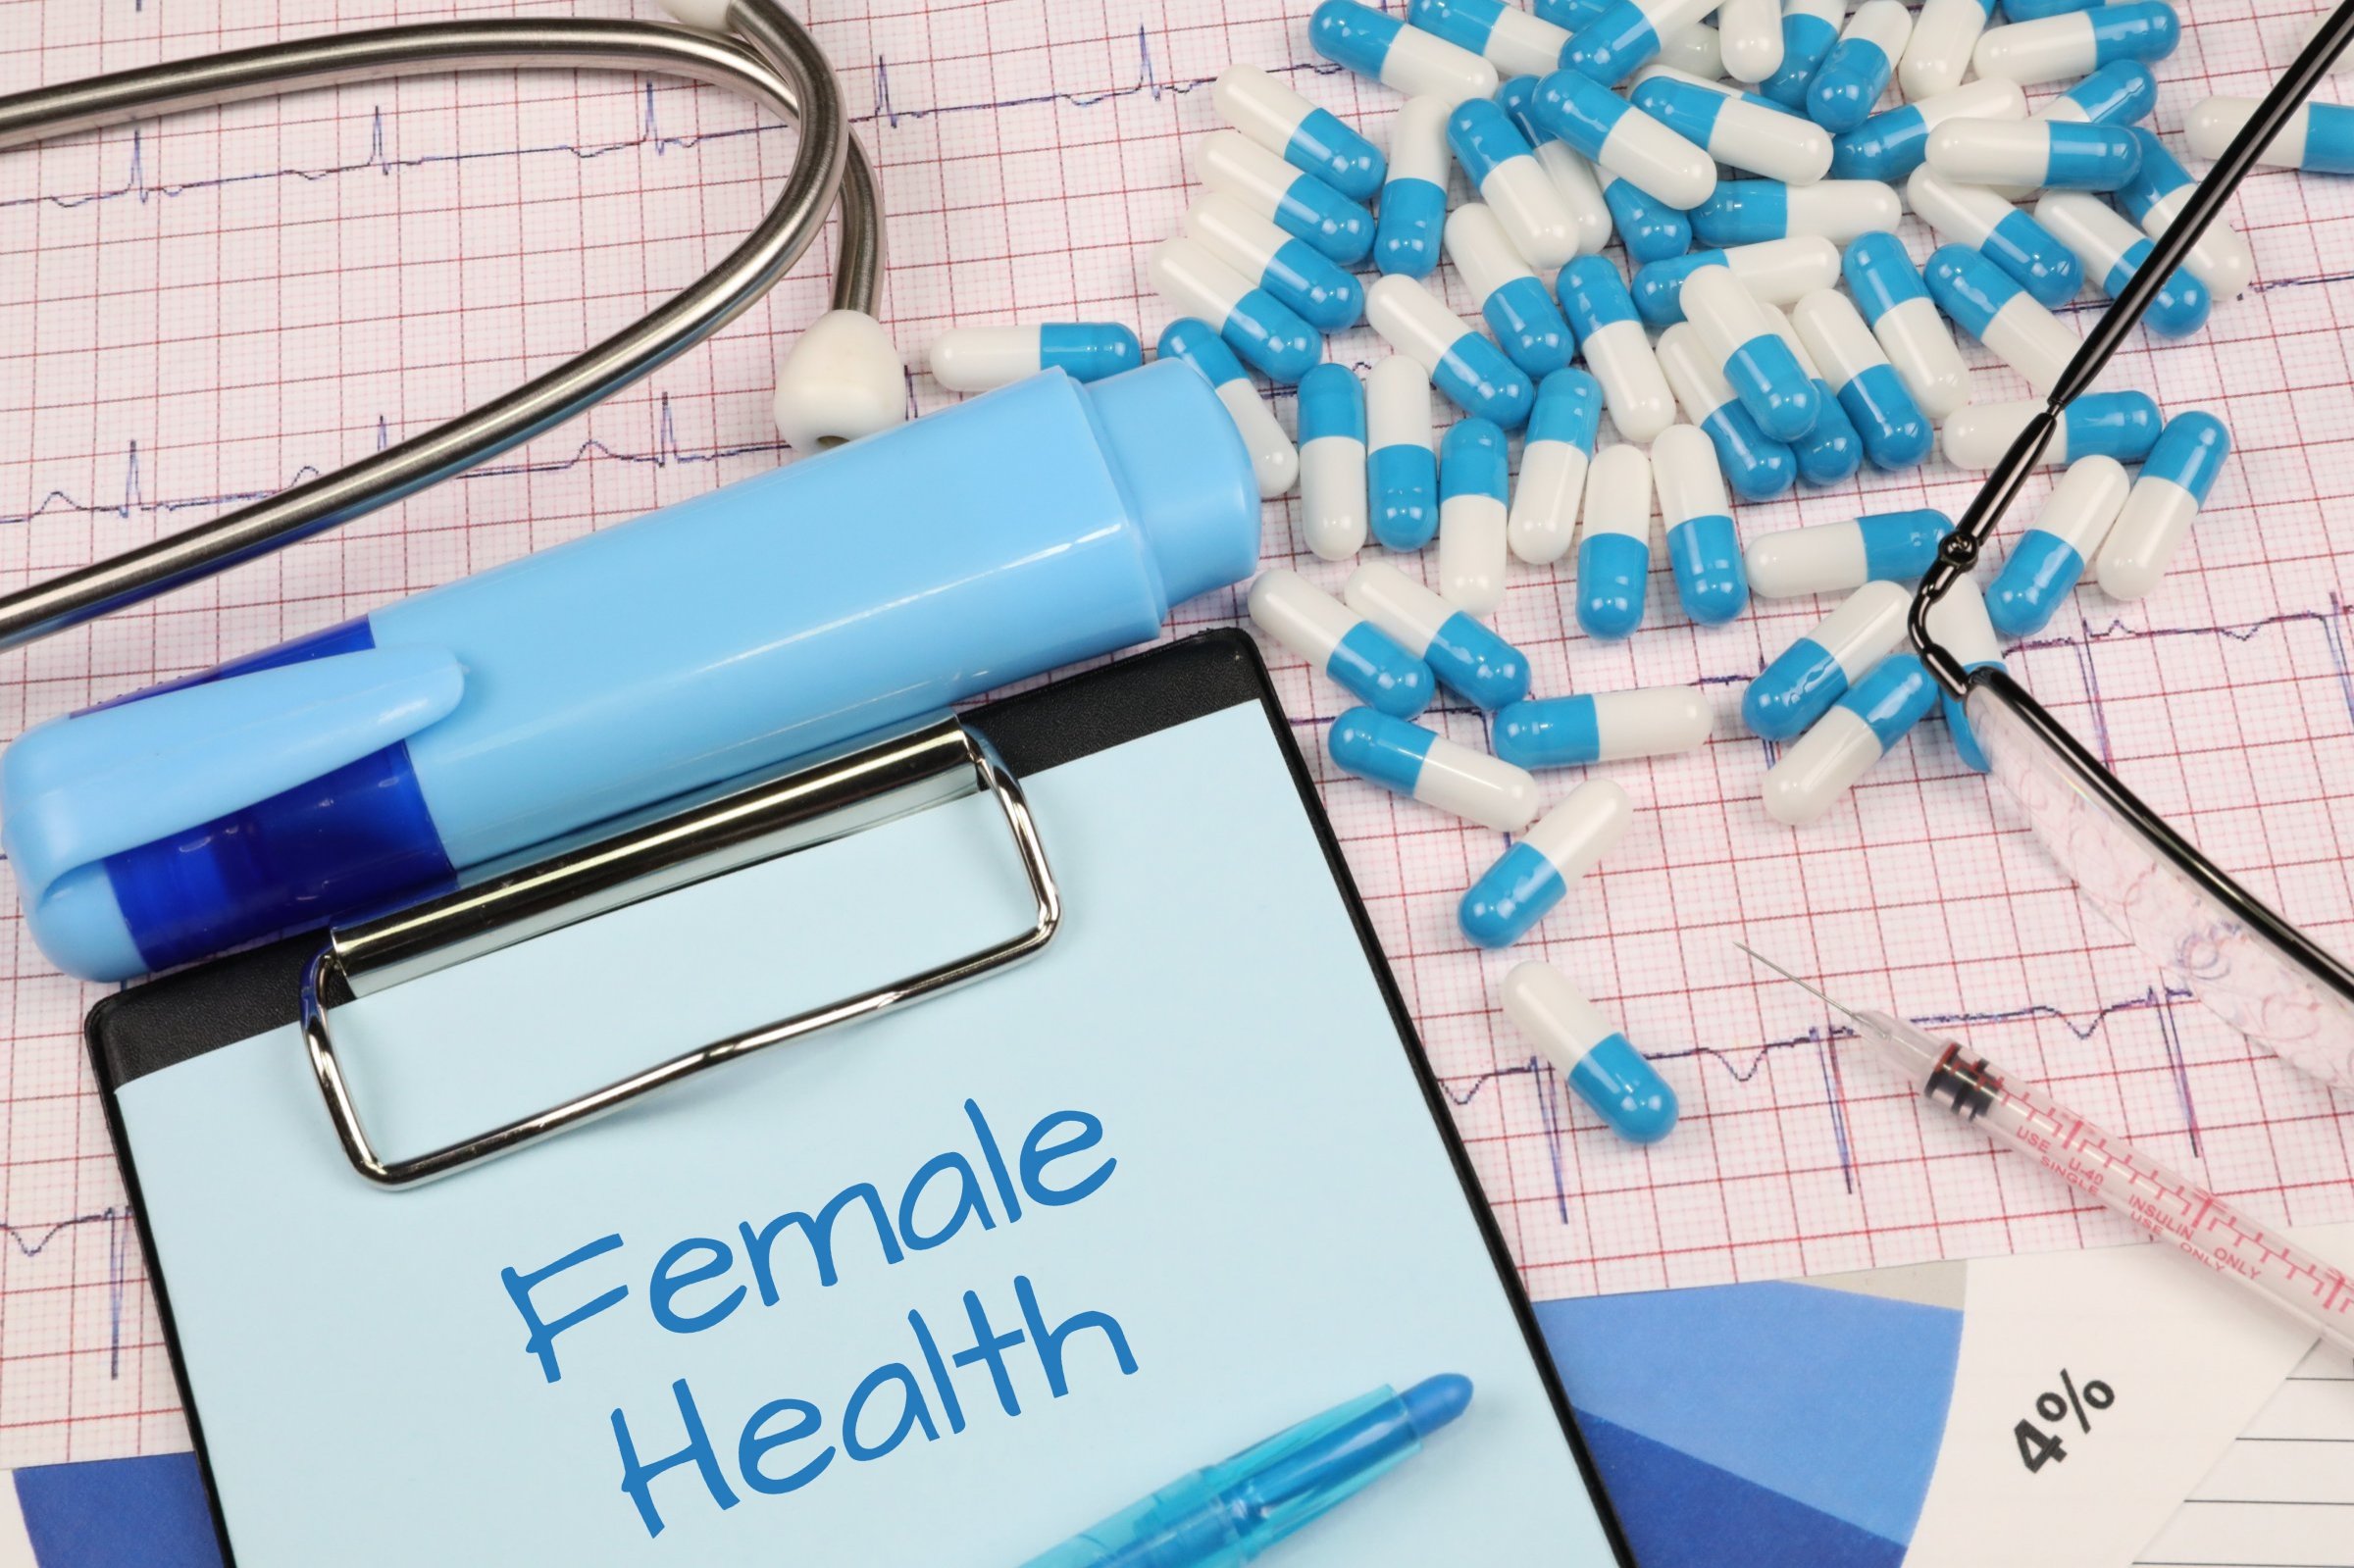 female health